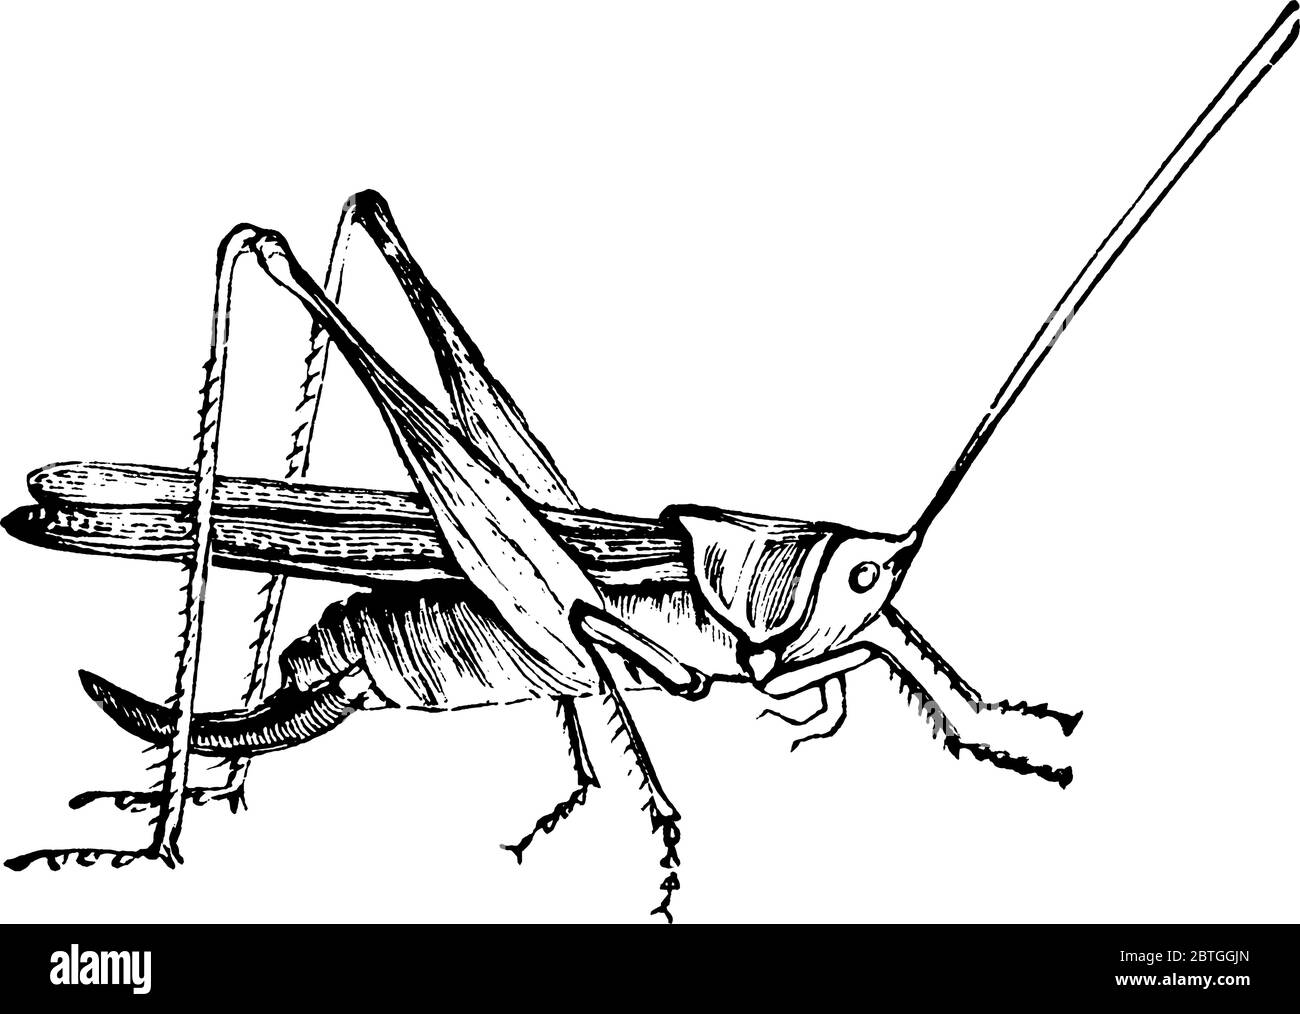 Eine typische Darstellung des Insekts, Cricket, das mit Grashüpfern und Katydiden verwandt ist, haben etwas abgeflachte Körper und lange Antennen, Vinta Stock Vektor